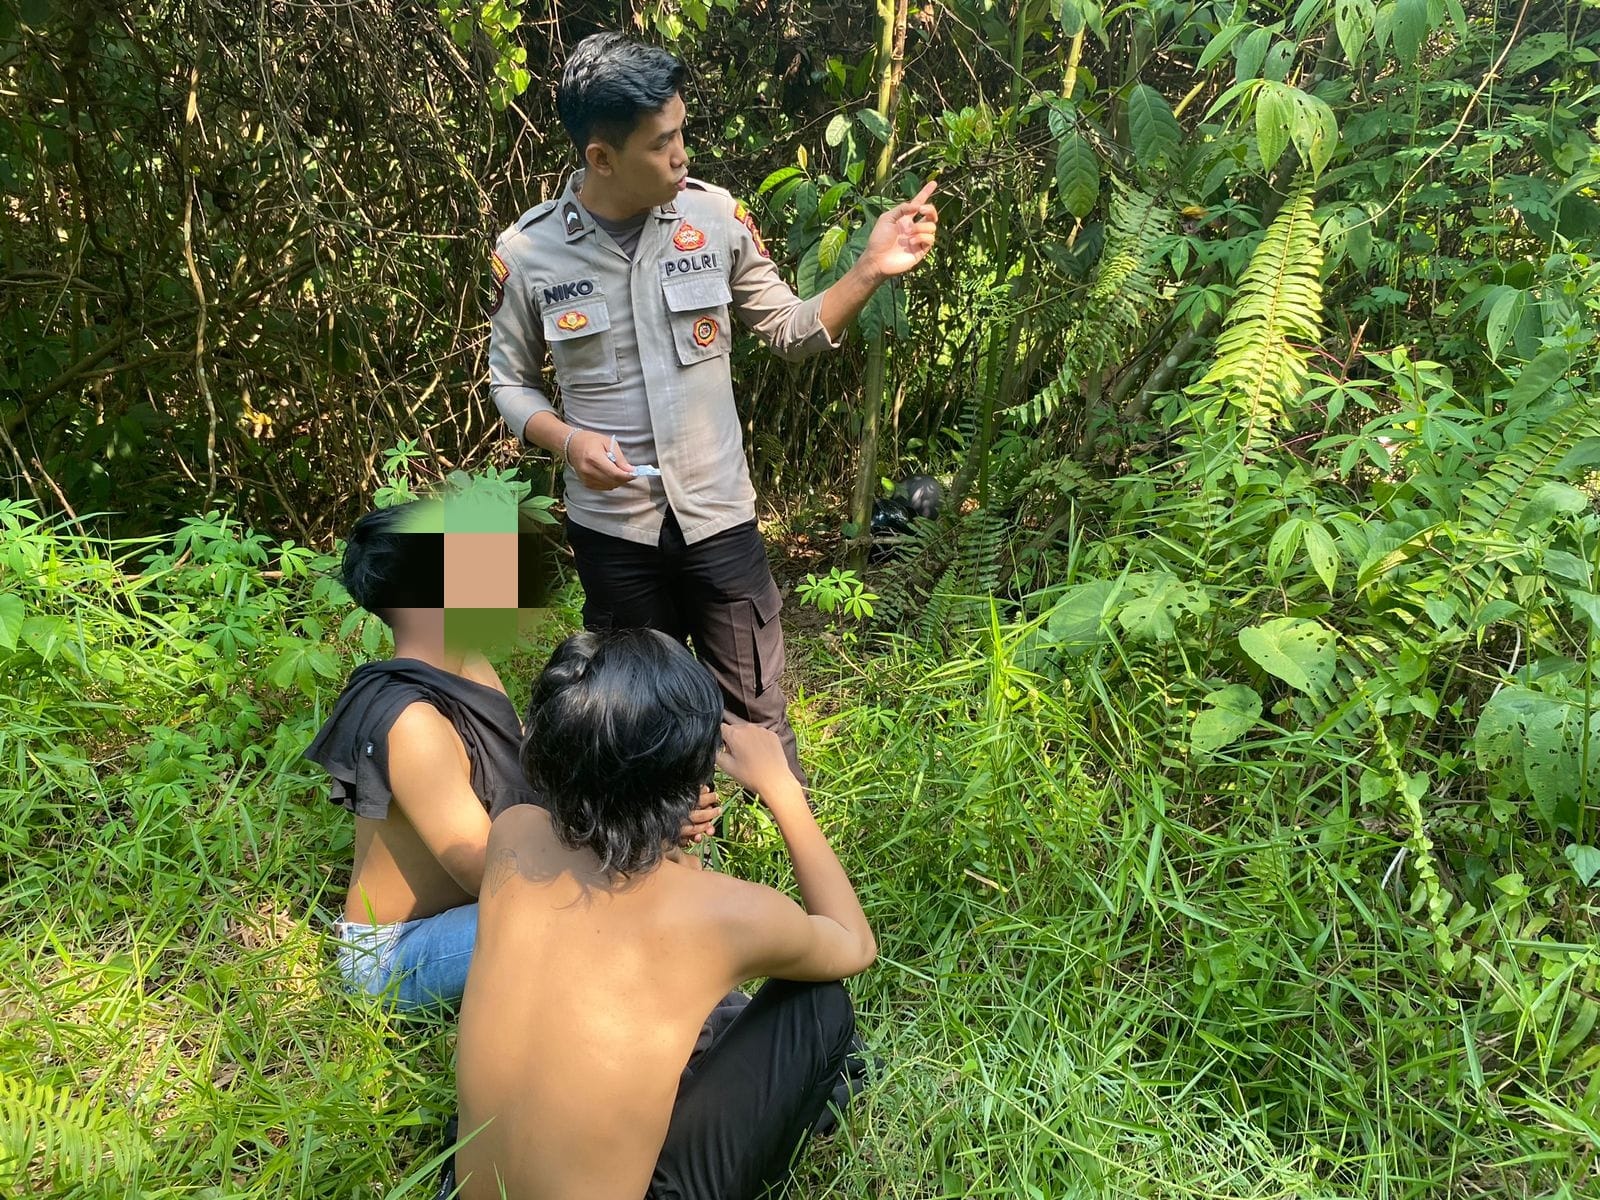 Sedang Asik Konsumsi Narkoba Dua Pemuda Ditangkap Polisi di Dalam Hutan